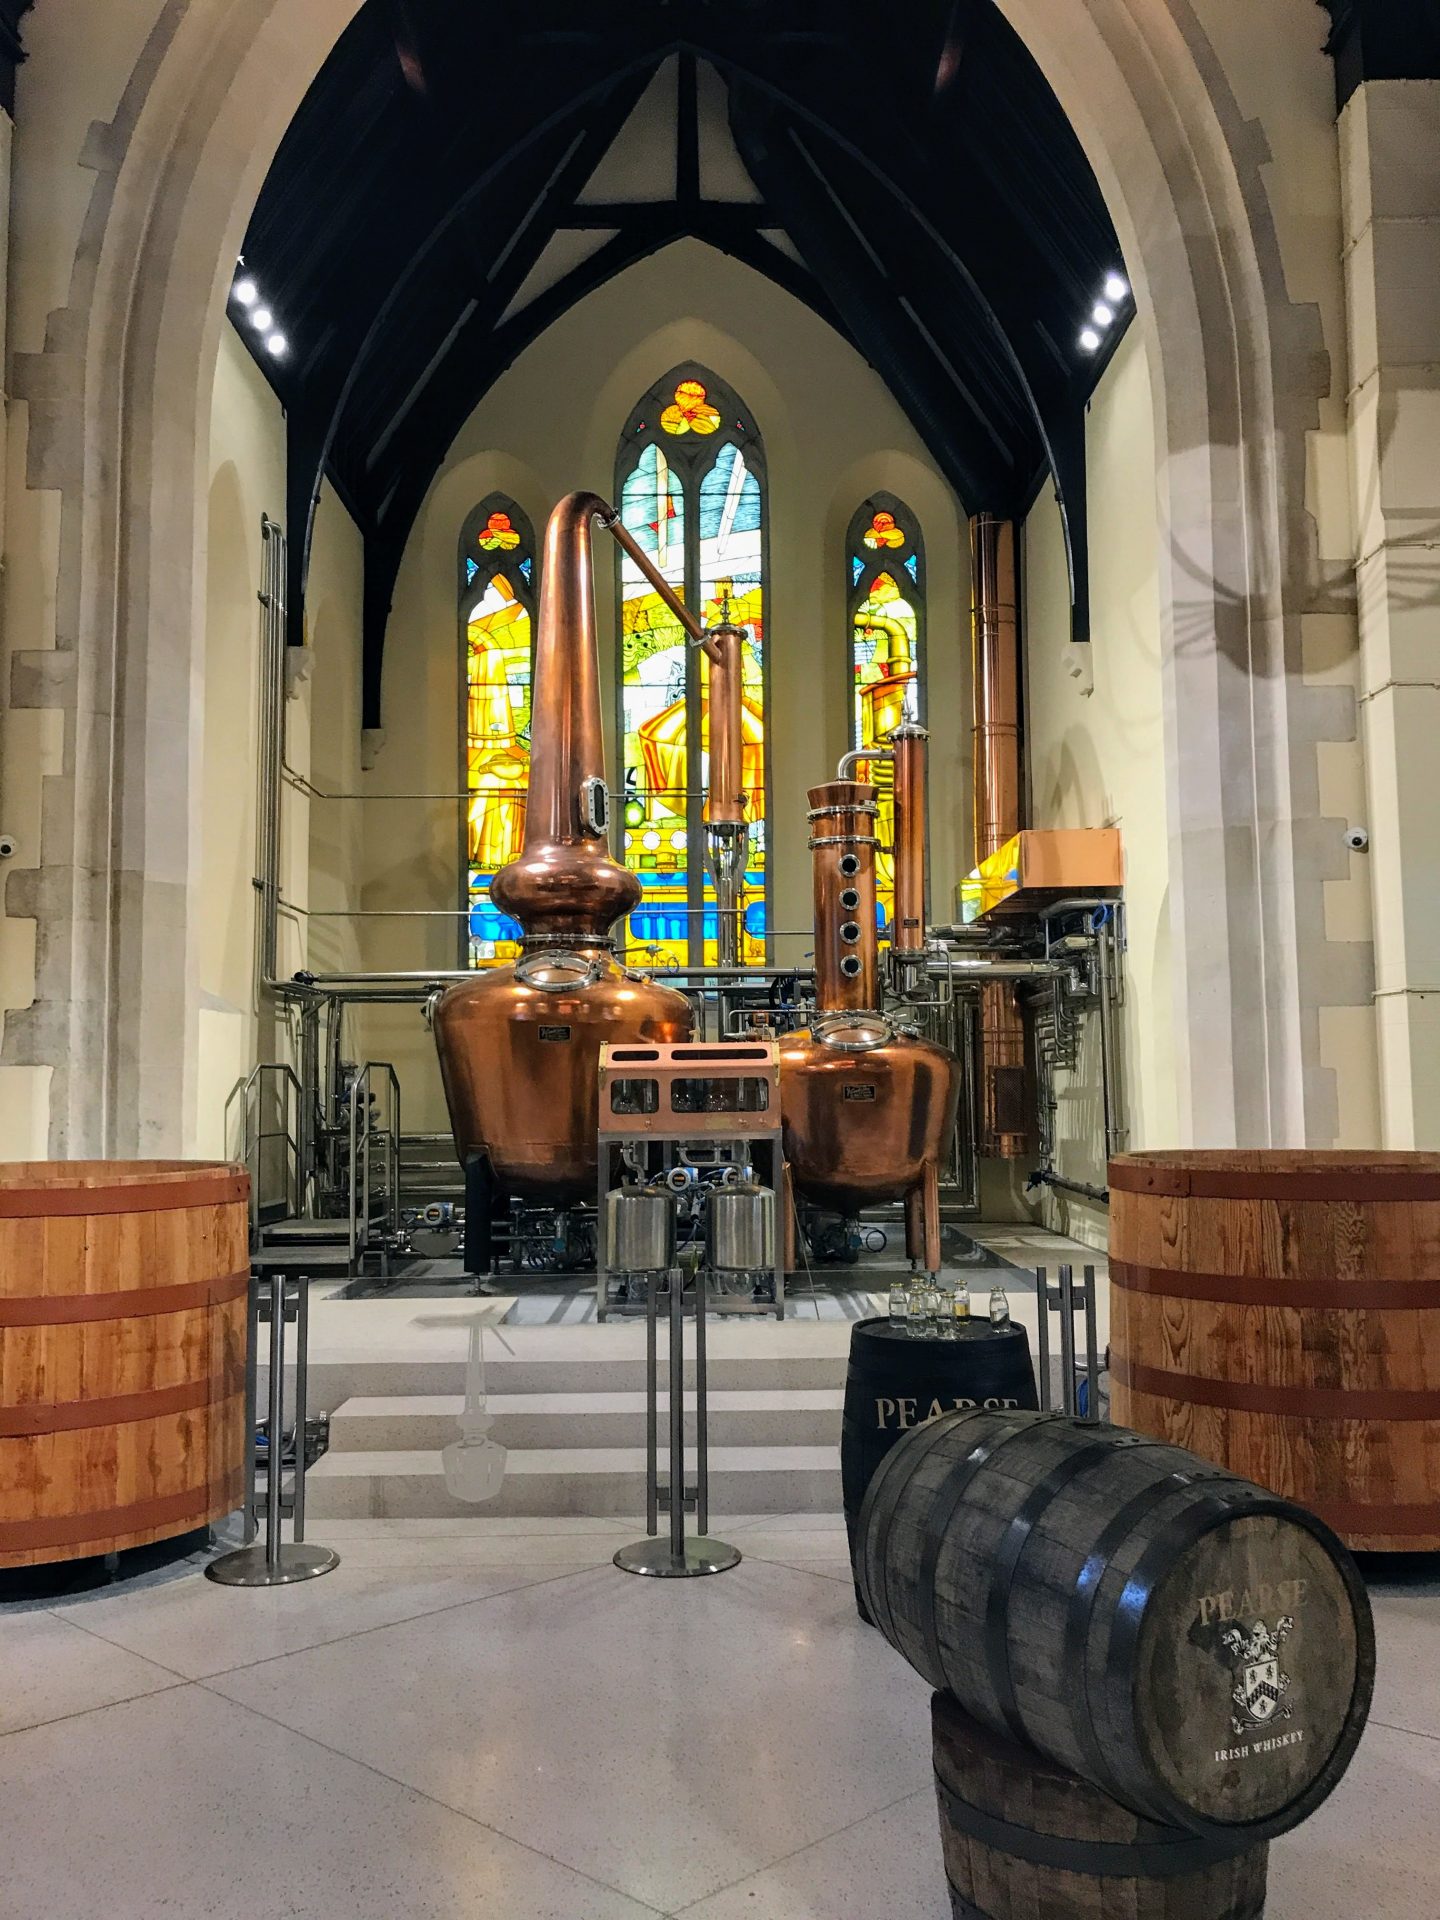 pearse lyons distillery copper pot stills stained glass windows - Pearse Lyons Distillery Tour & Tasting in Dublin, Ireland